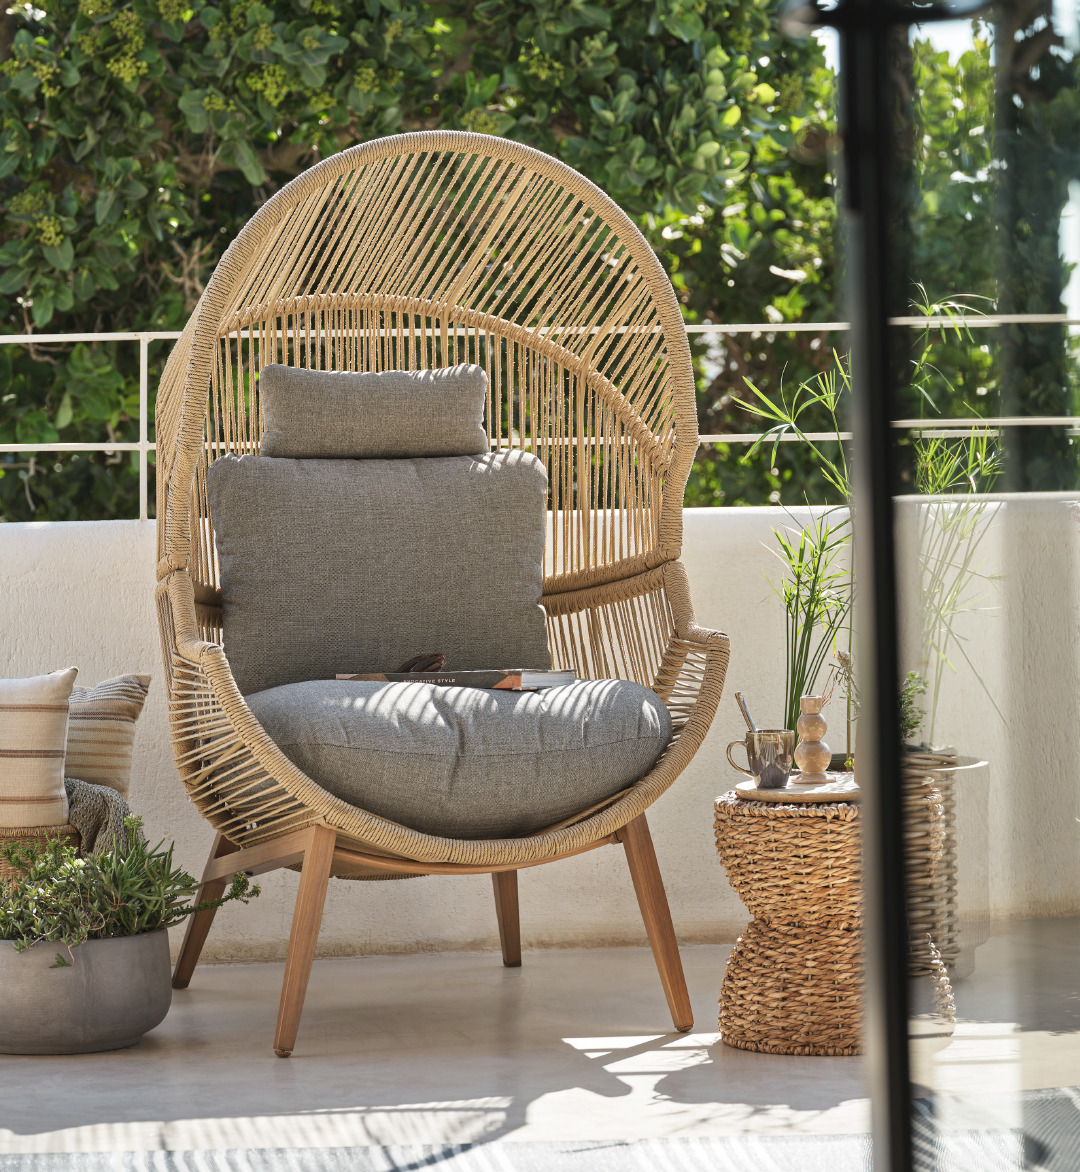  Лаунж крісло HALVREBENE - це стильний та елегантний вибір для вашого саду, яке додасть привабливості та комфорту вашому затишному куточку на відкритому повітрі.